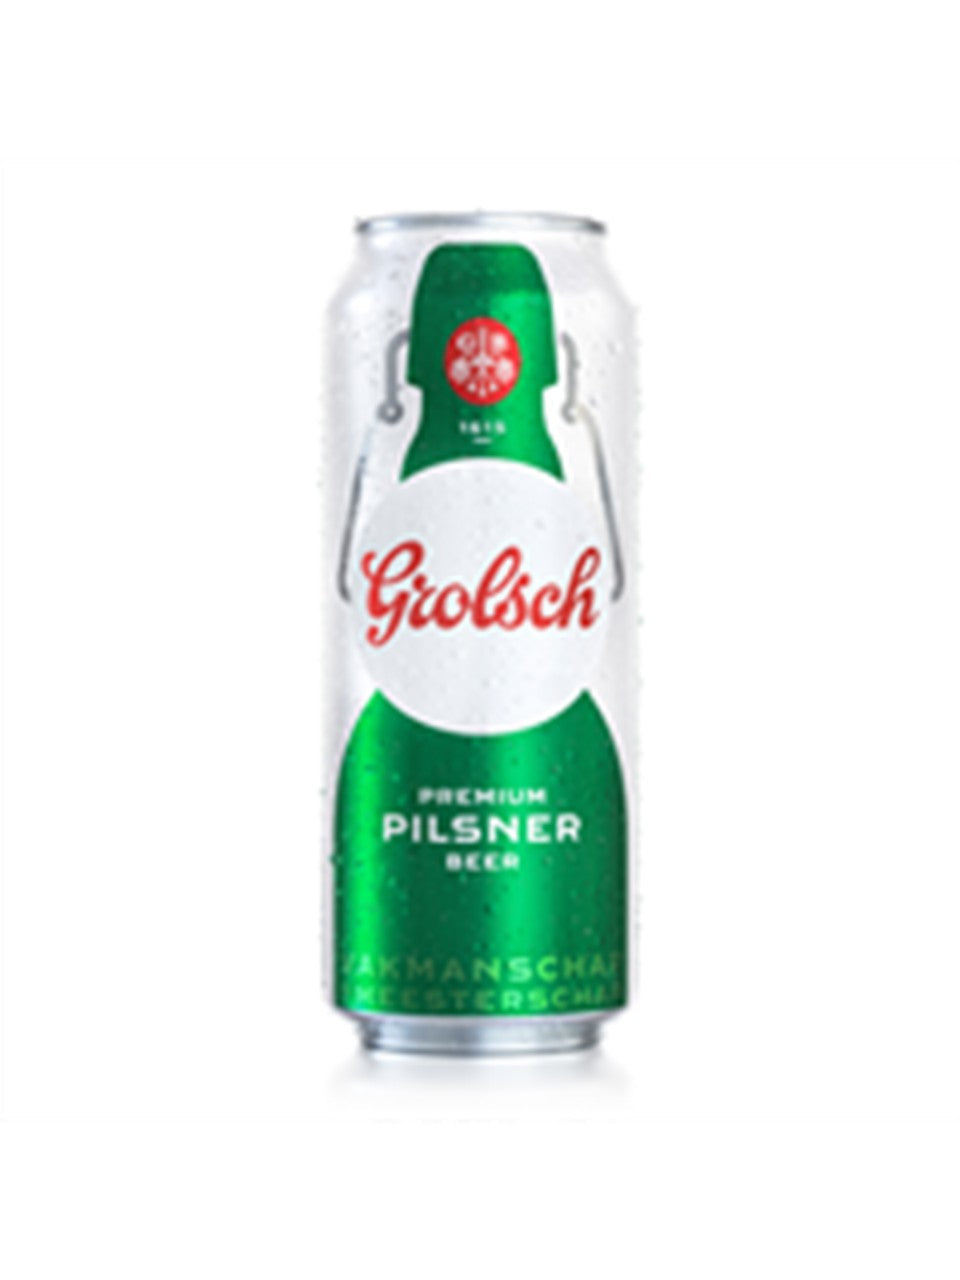 Grolsch Premium Pilsner 500 mL can